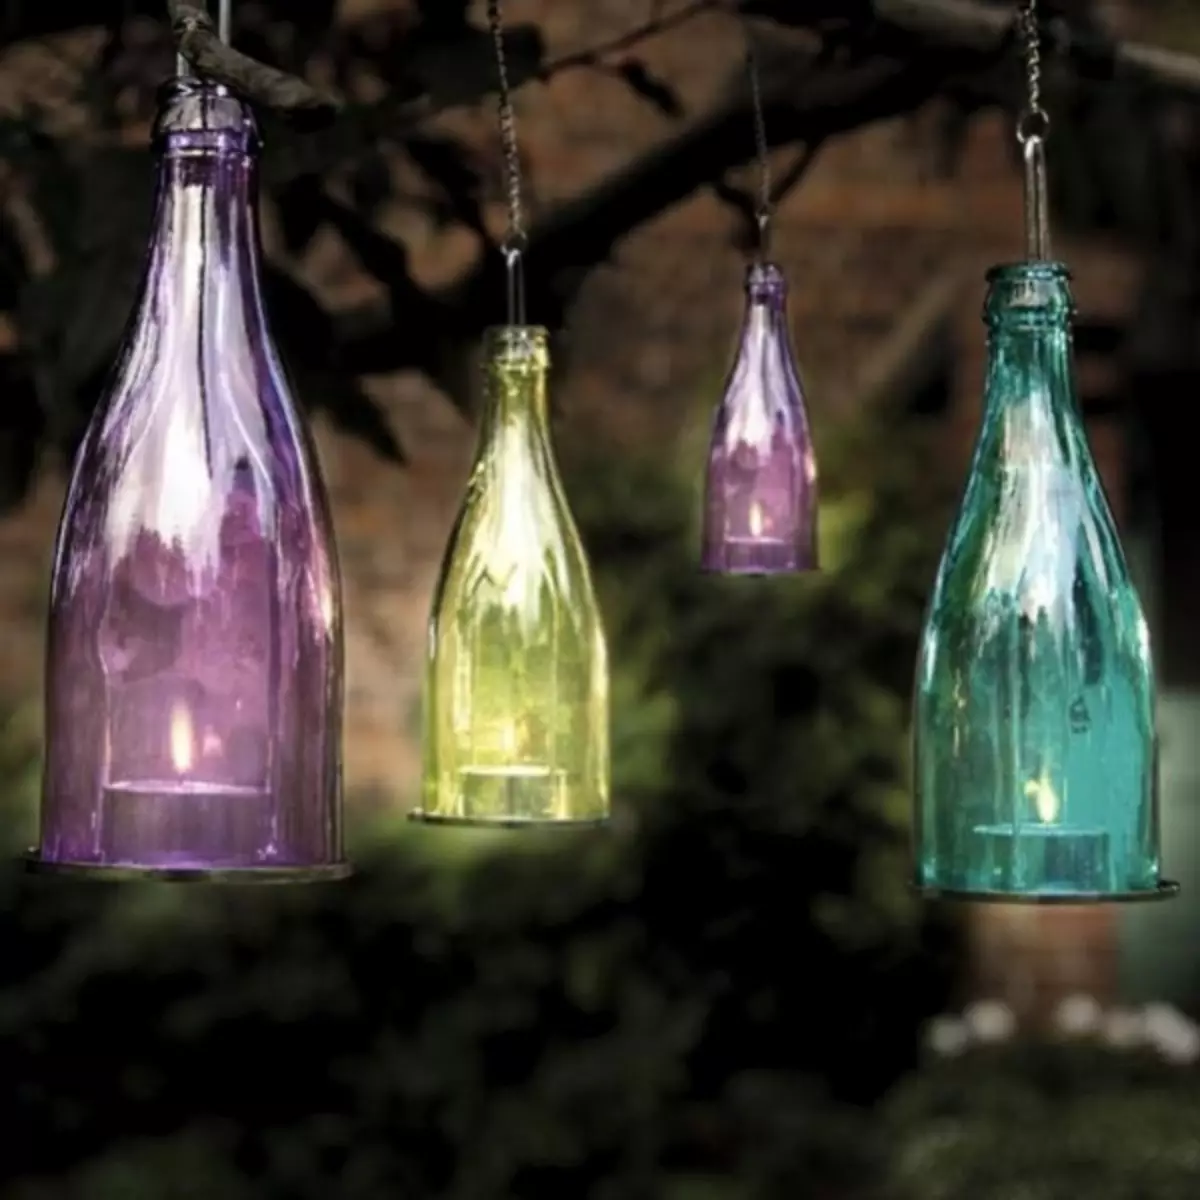 Rúa Cobertura do país Faino vostede mesmo: 10 ideas elementais para lámpadas de xardín (48 fotos)